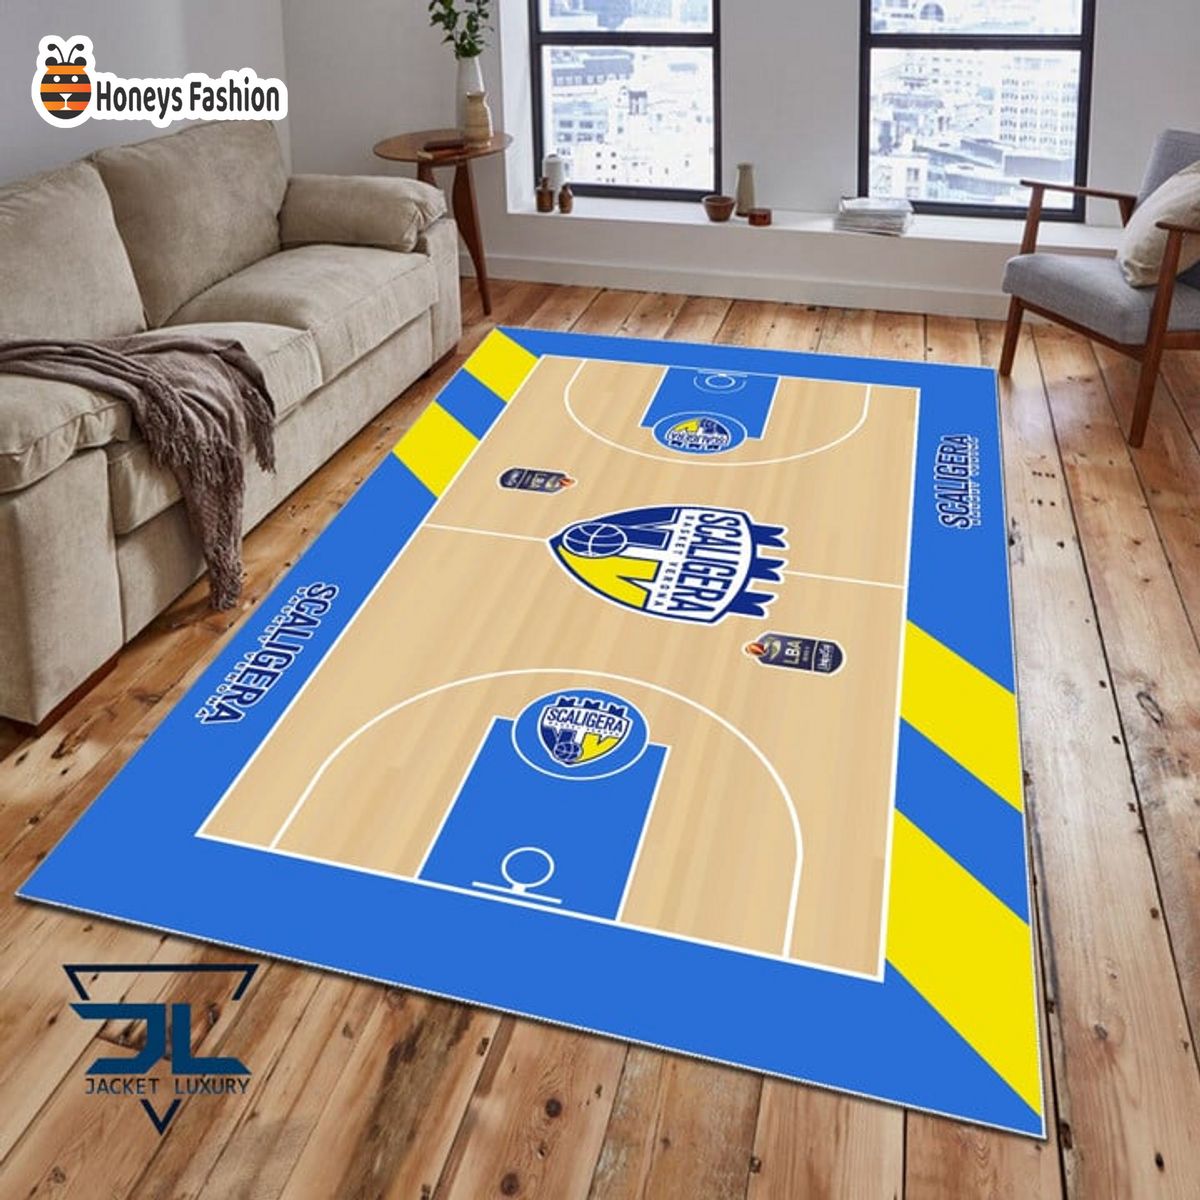 Scaligera Basket Verona Rug Carpet